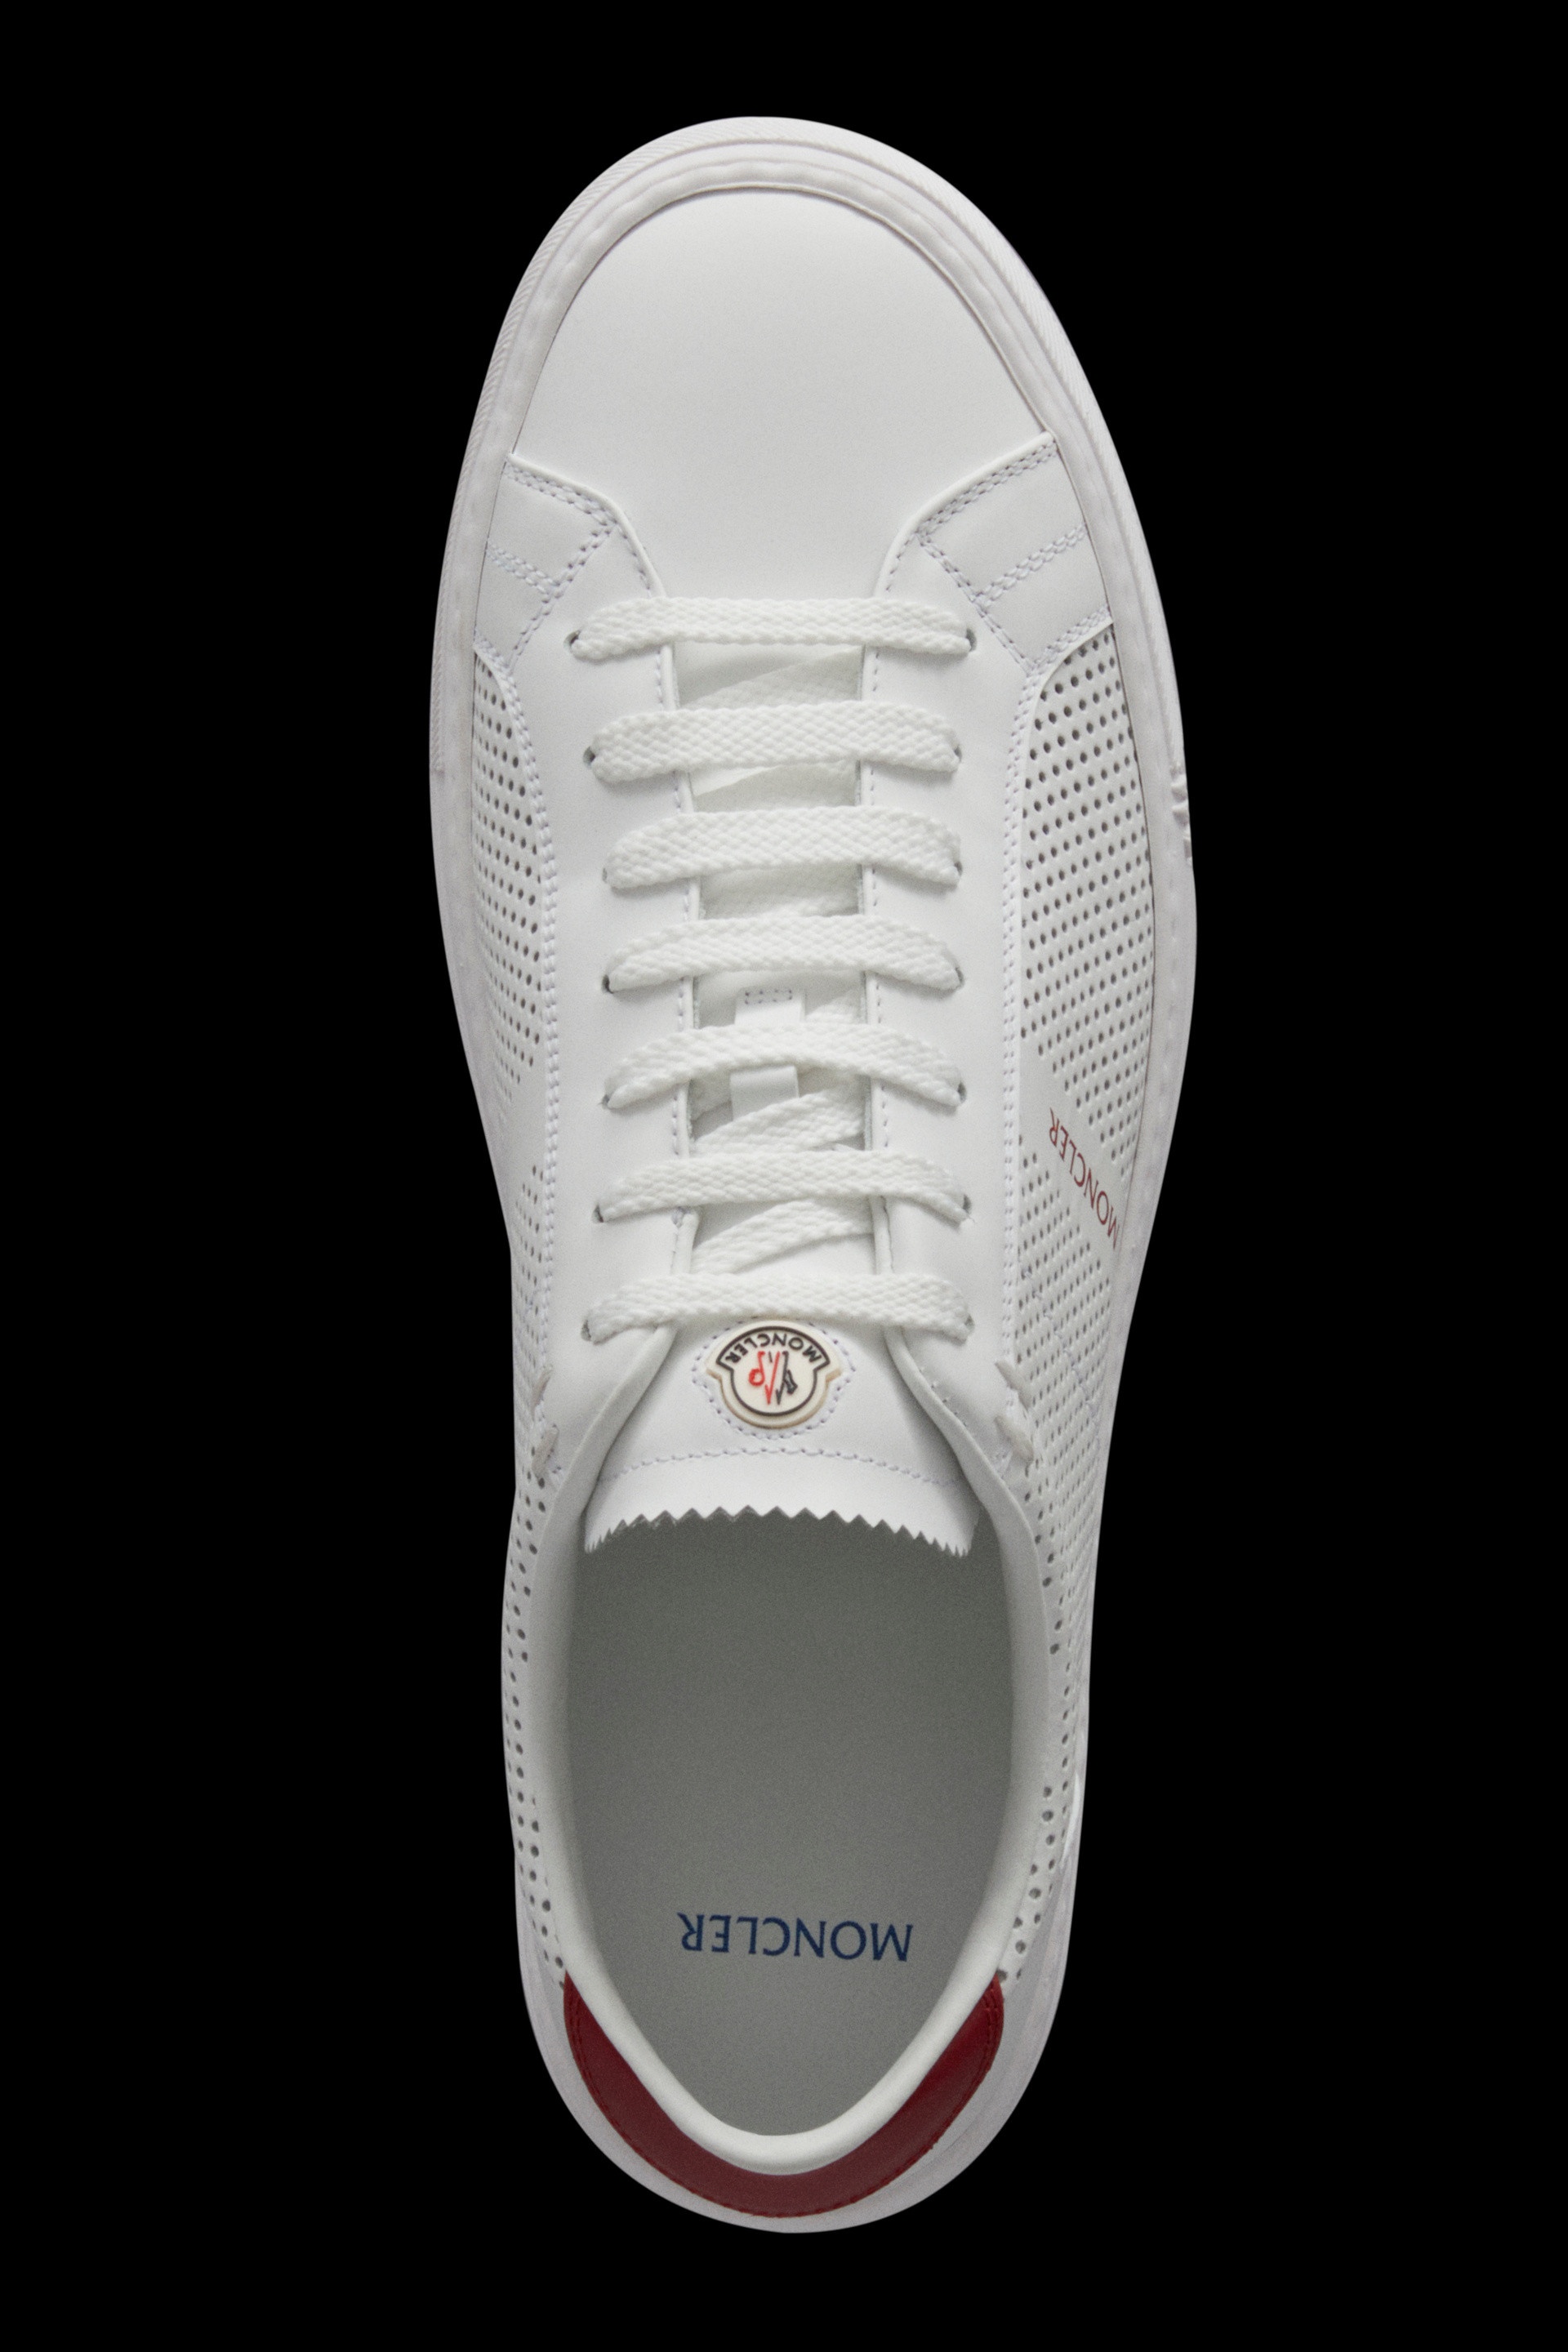 New Monaco Sneakers - 3